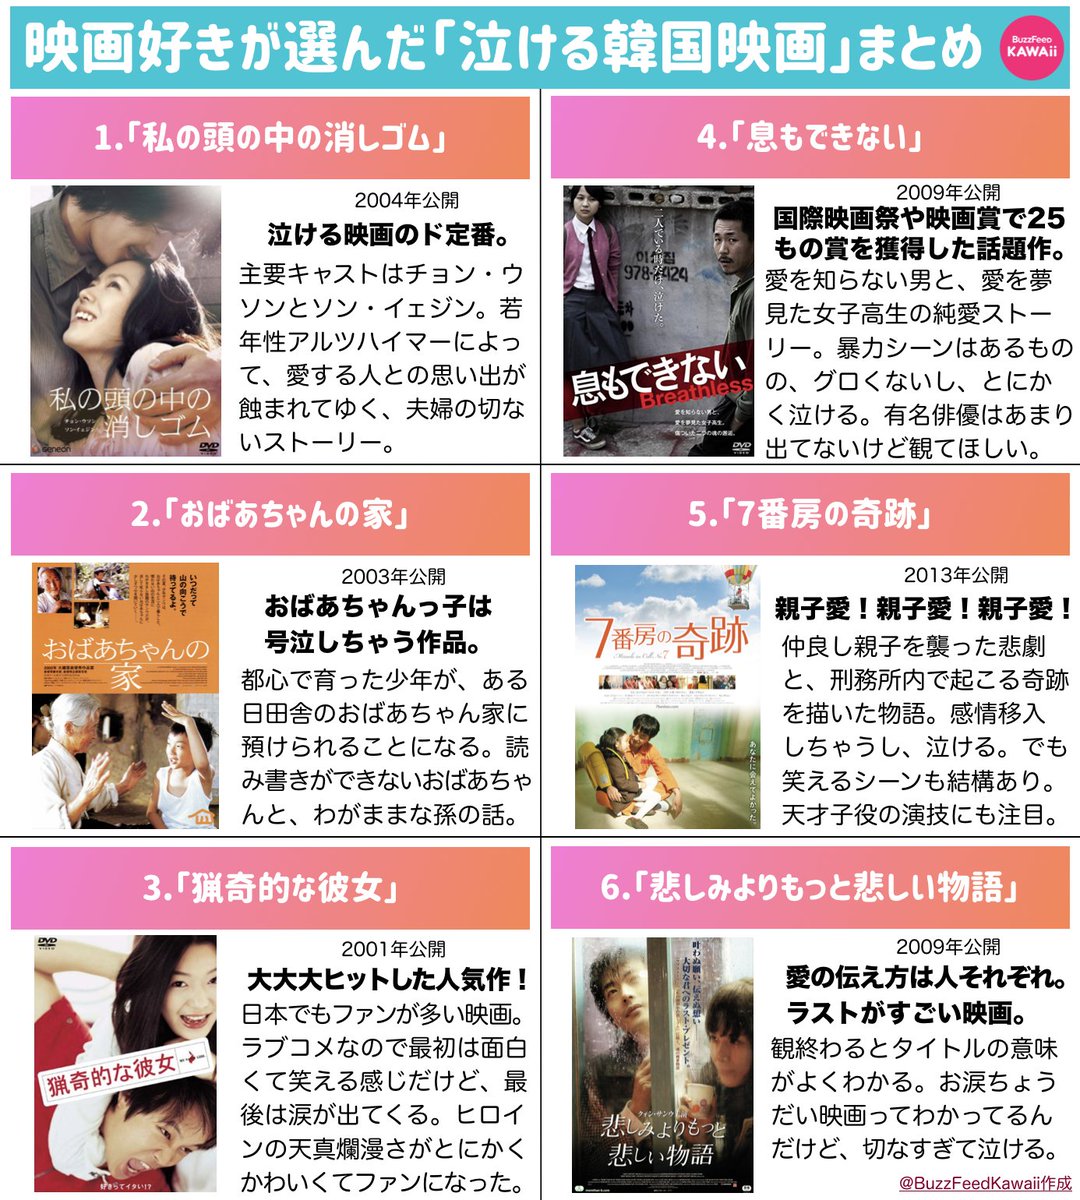 Buzzfeed Kawaii 映画オタに聞いた 泣ける韓国映画 リストです